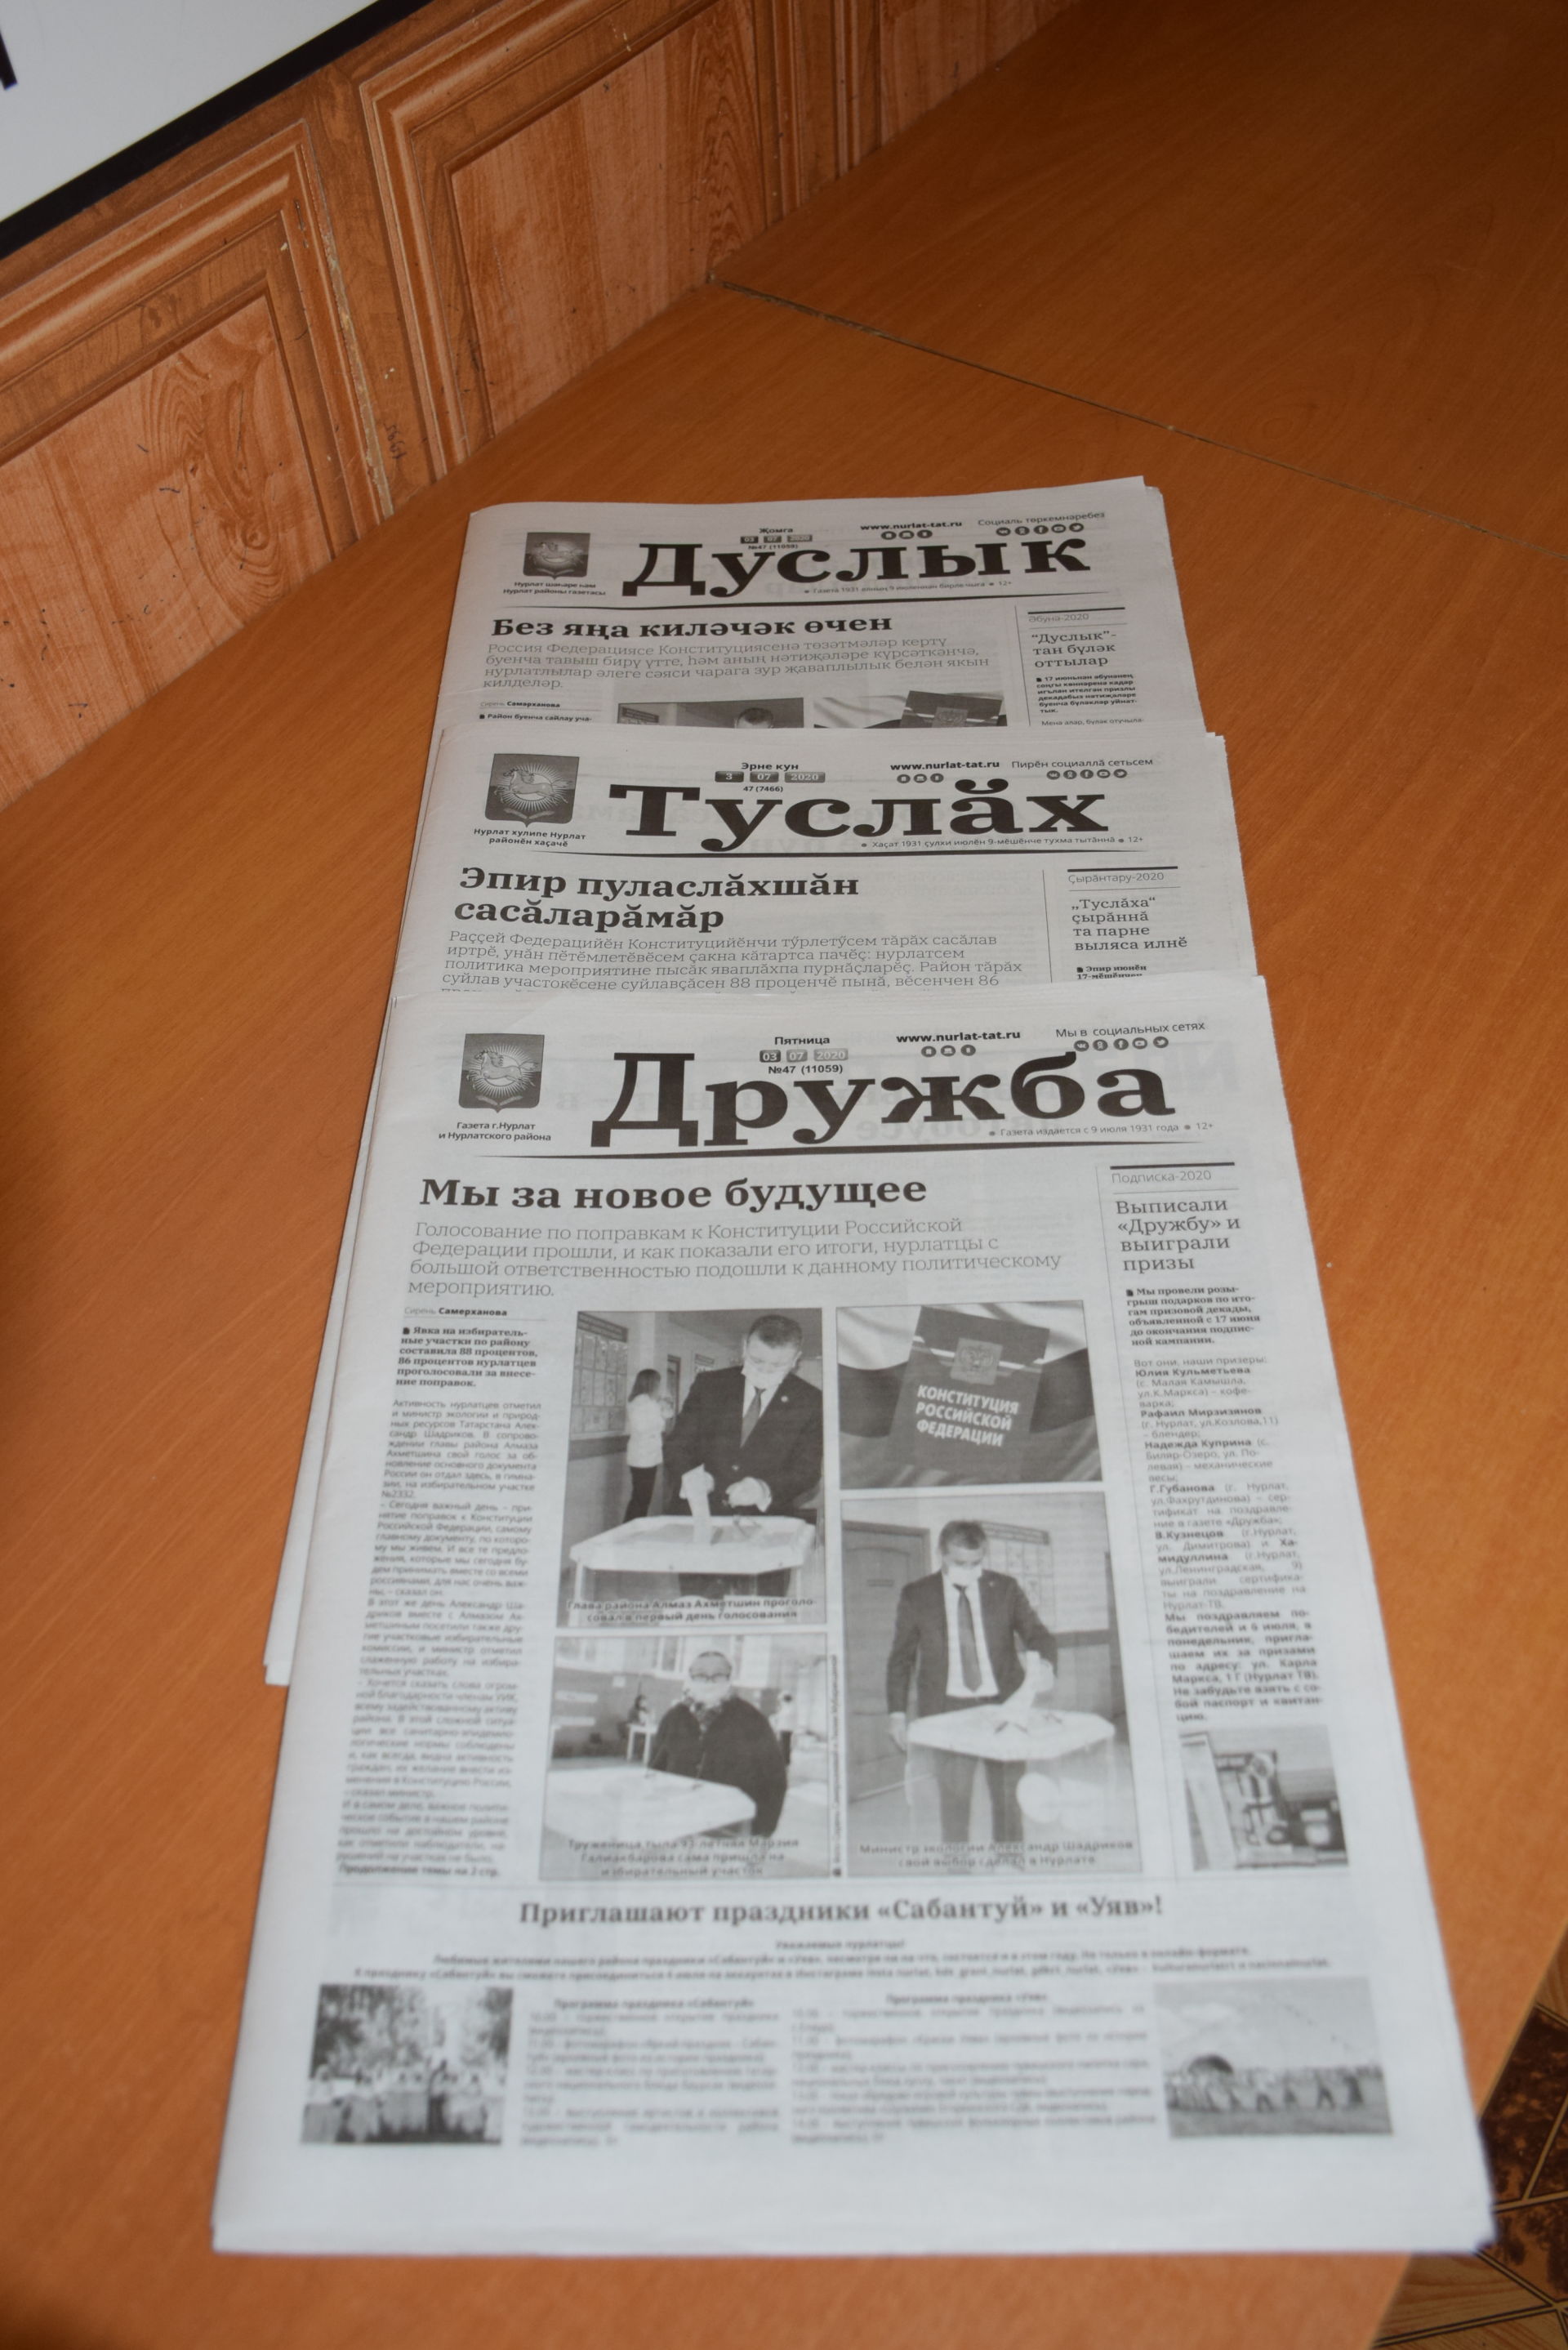 Районная газета "Дружба" сегодня отмечает 89 лет со дня основания